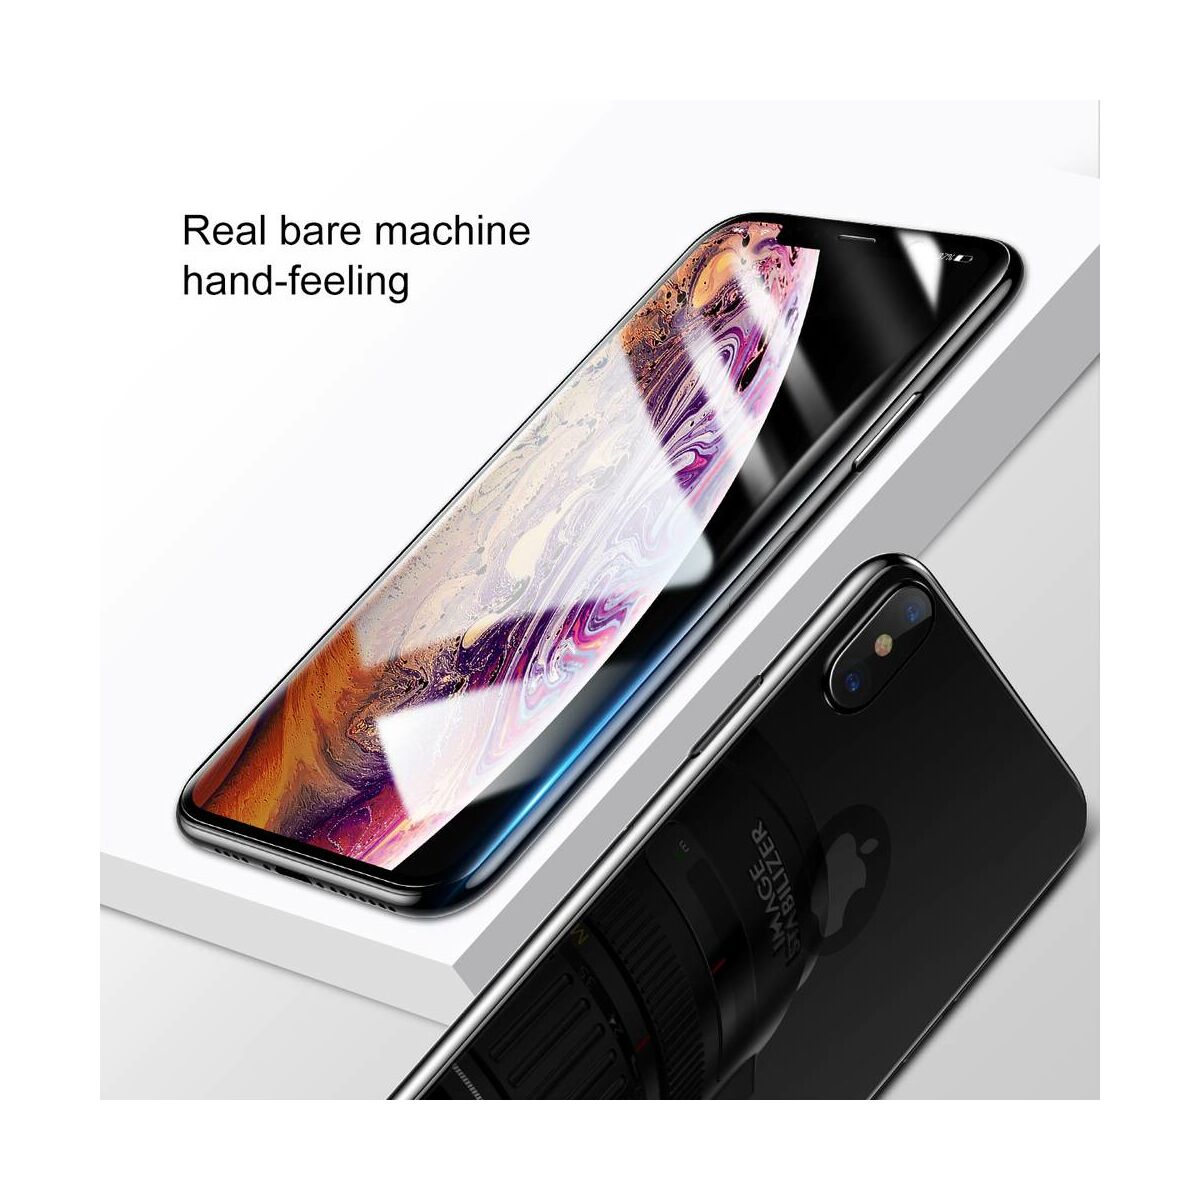 Kép 2/9 - Baseus iPhone XS Max (6.5") 0.3 mm, üveg fólia szett (előlap + hátlap), fekete (SGAPIPH65-TZ01)